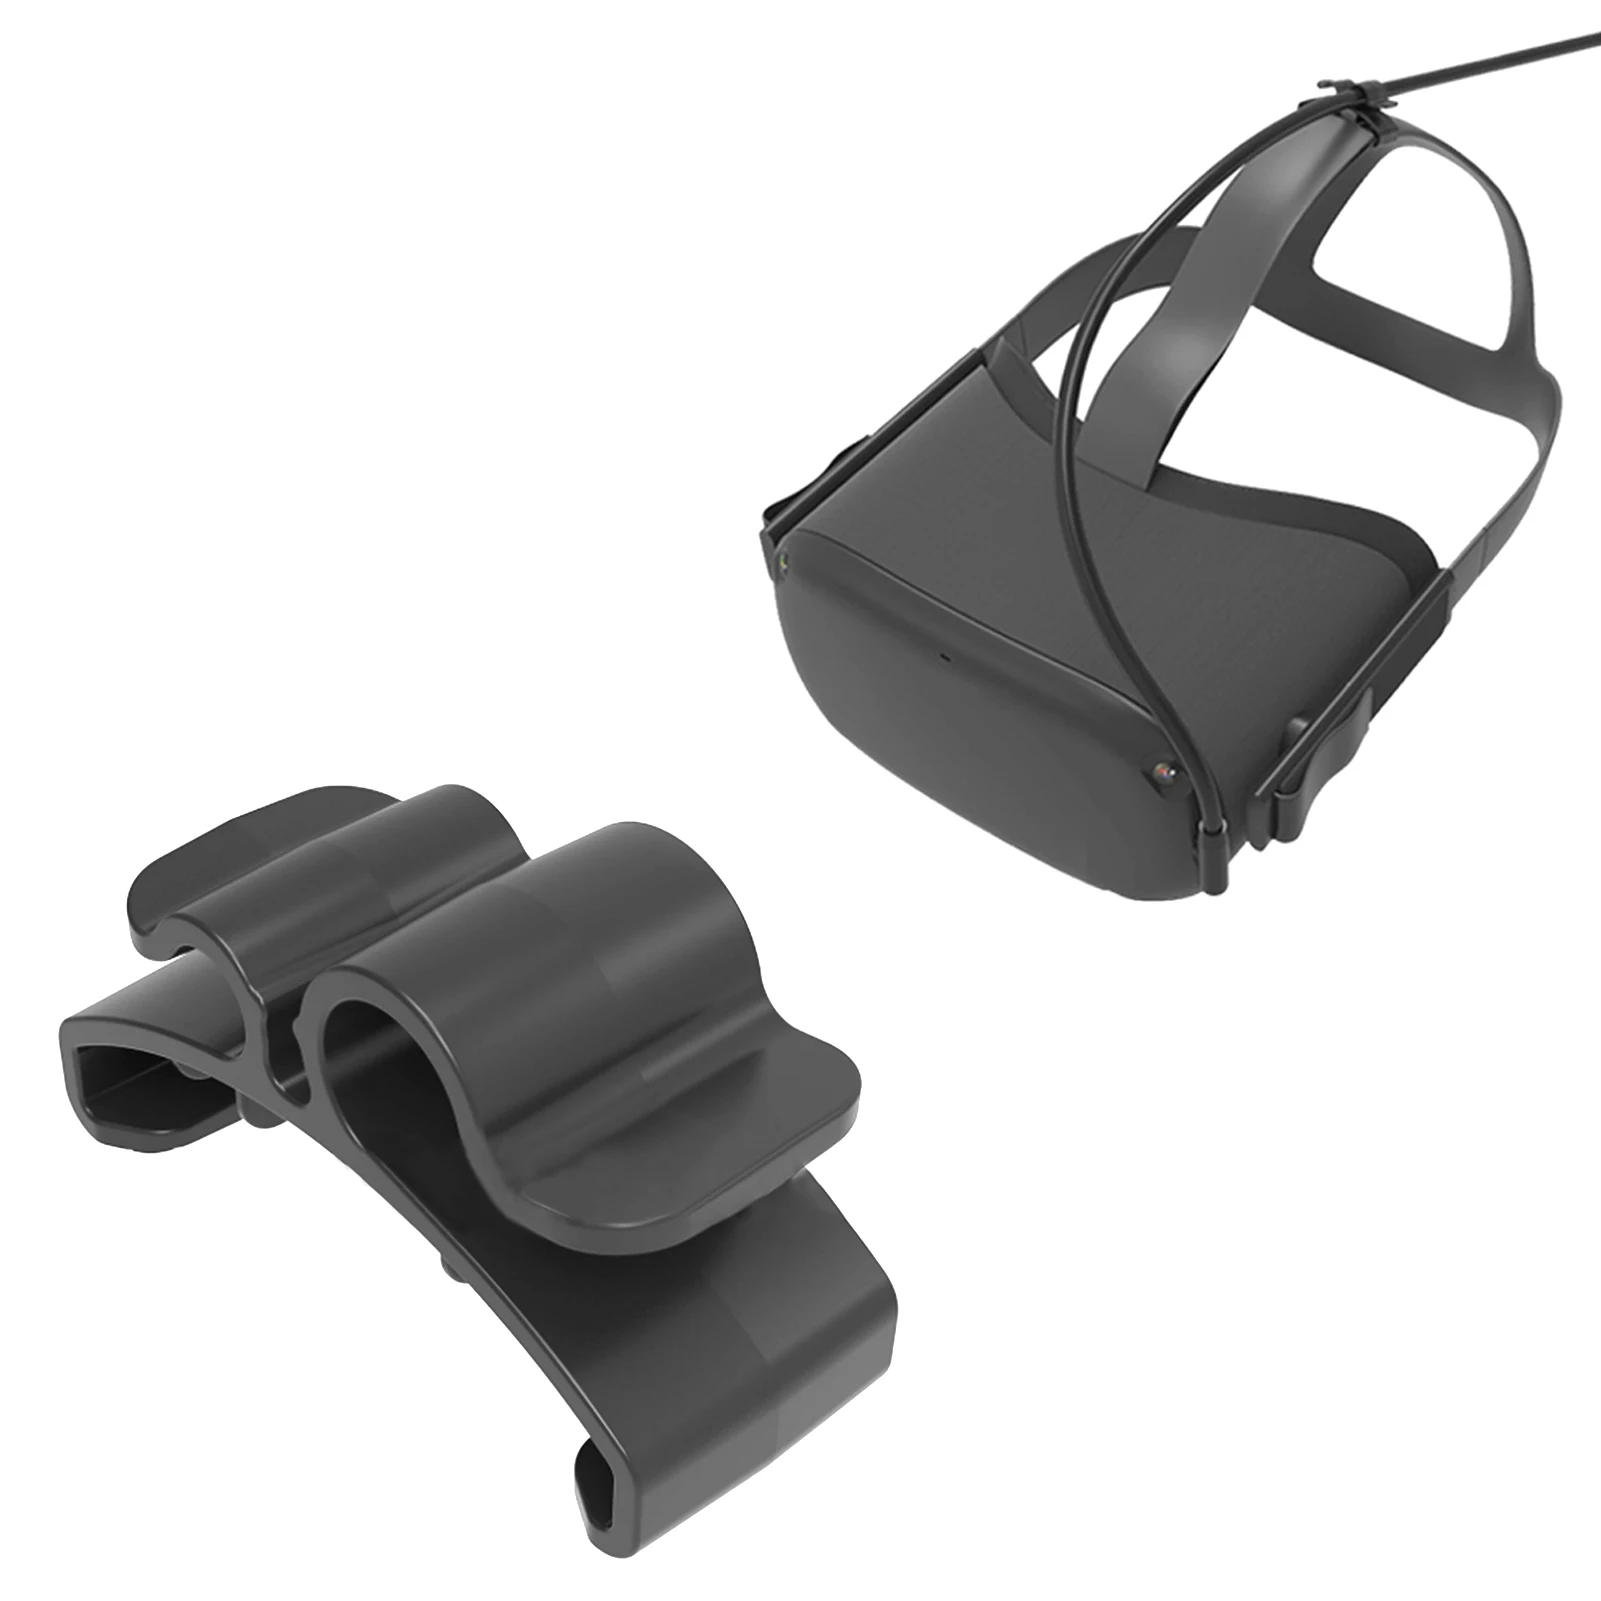 

2 шт. кабельные зажимы для Oculus Quest 2 VR-гарнитуры, портативный зажим для шнура, органайзер для проводов Oculus Quest, аксессуары для виртуальной реал...